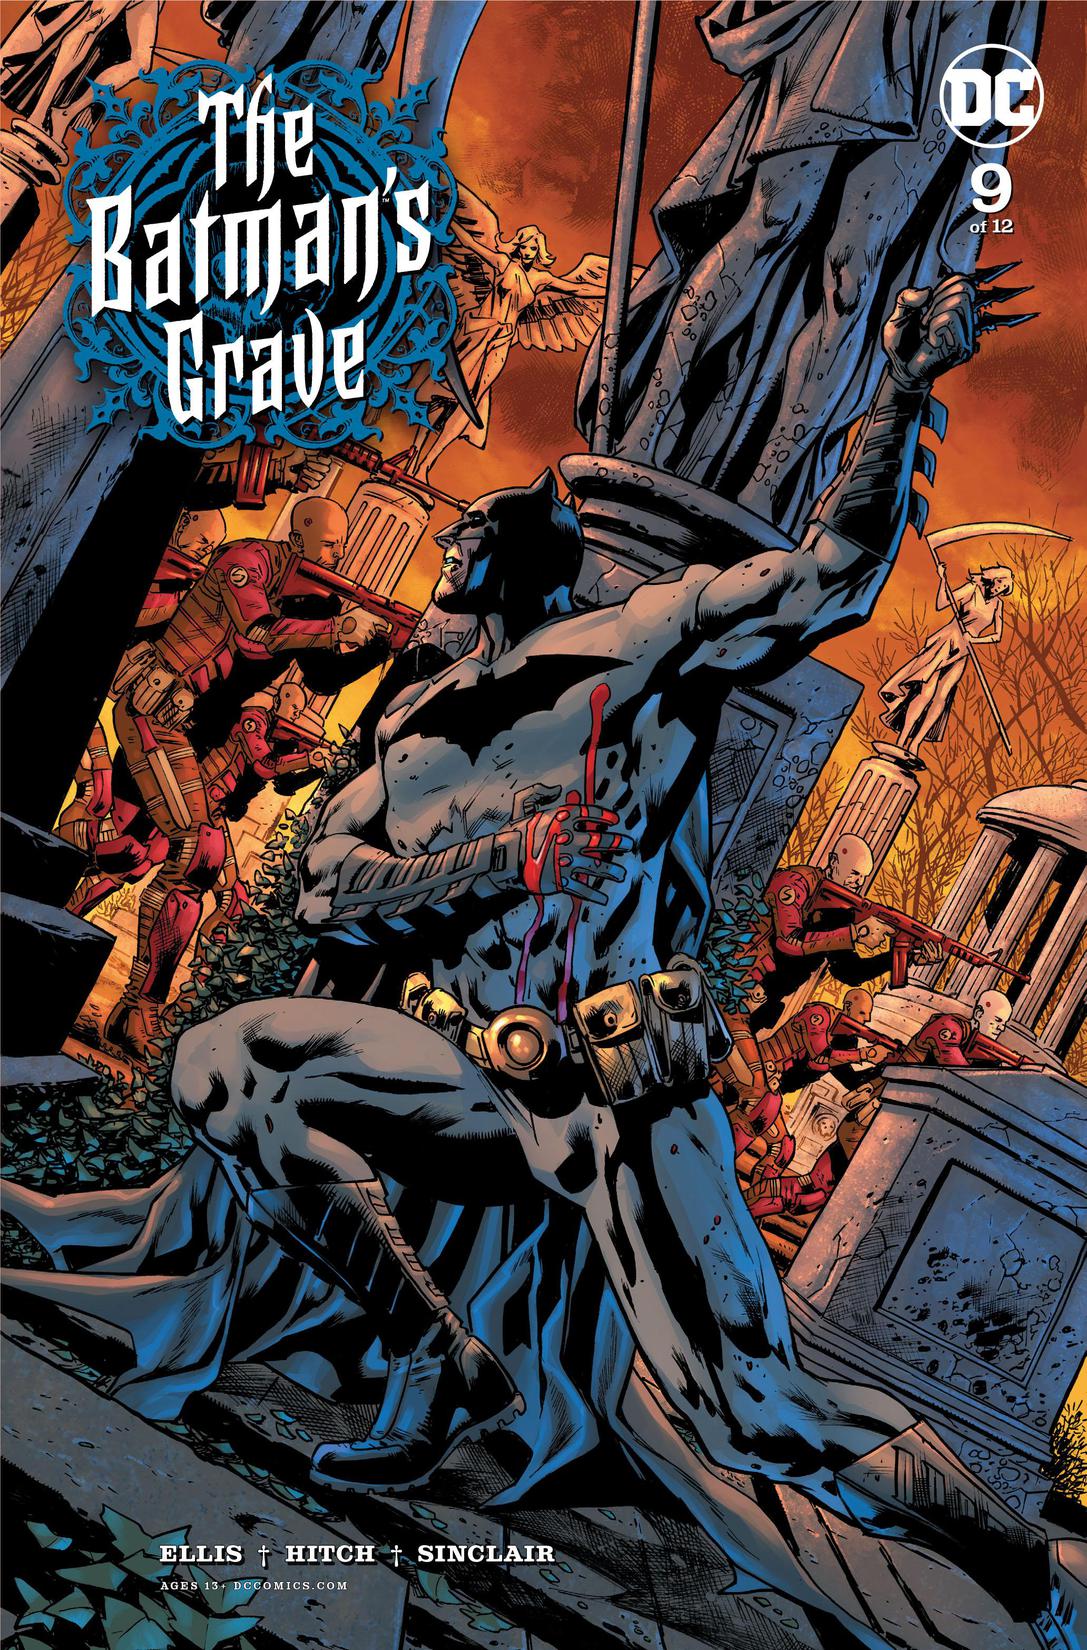 The Batman's Grave #9 preview images